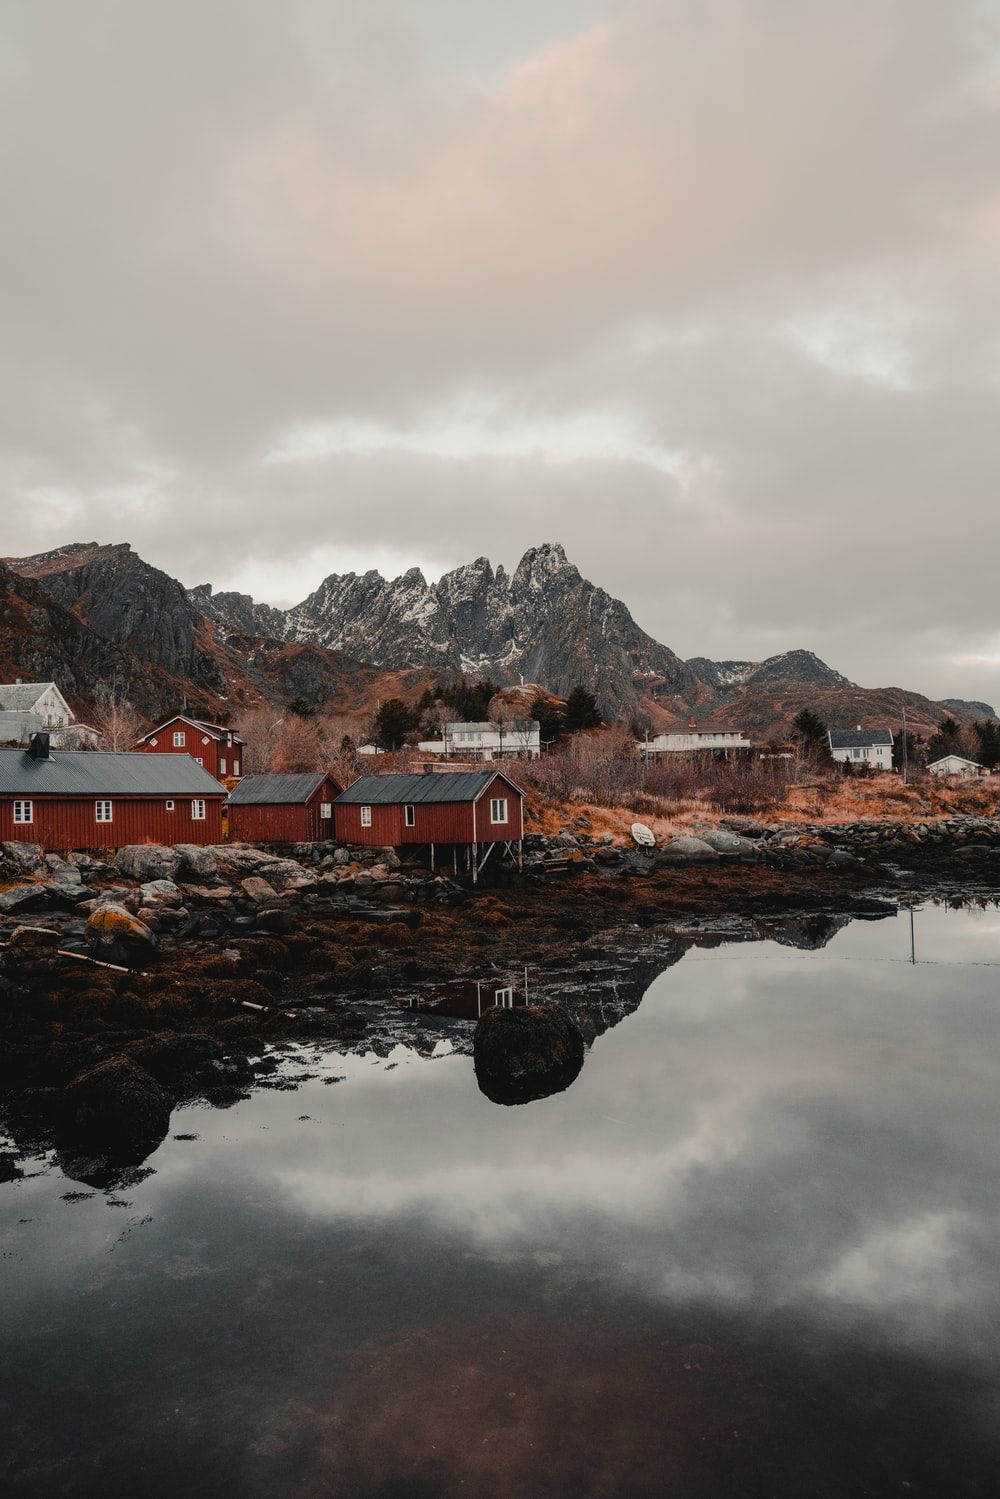 Lofoten, Norway Picture. Download Free Image